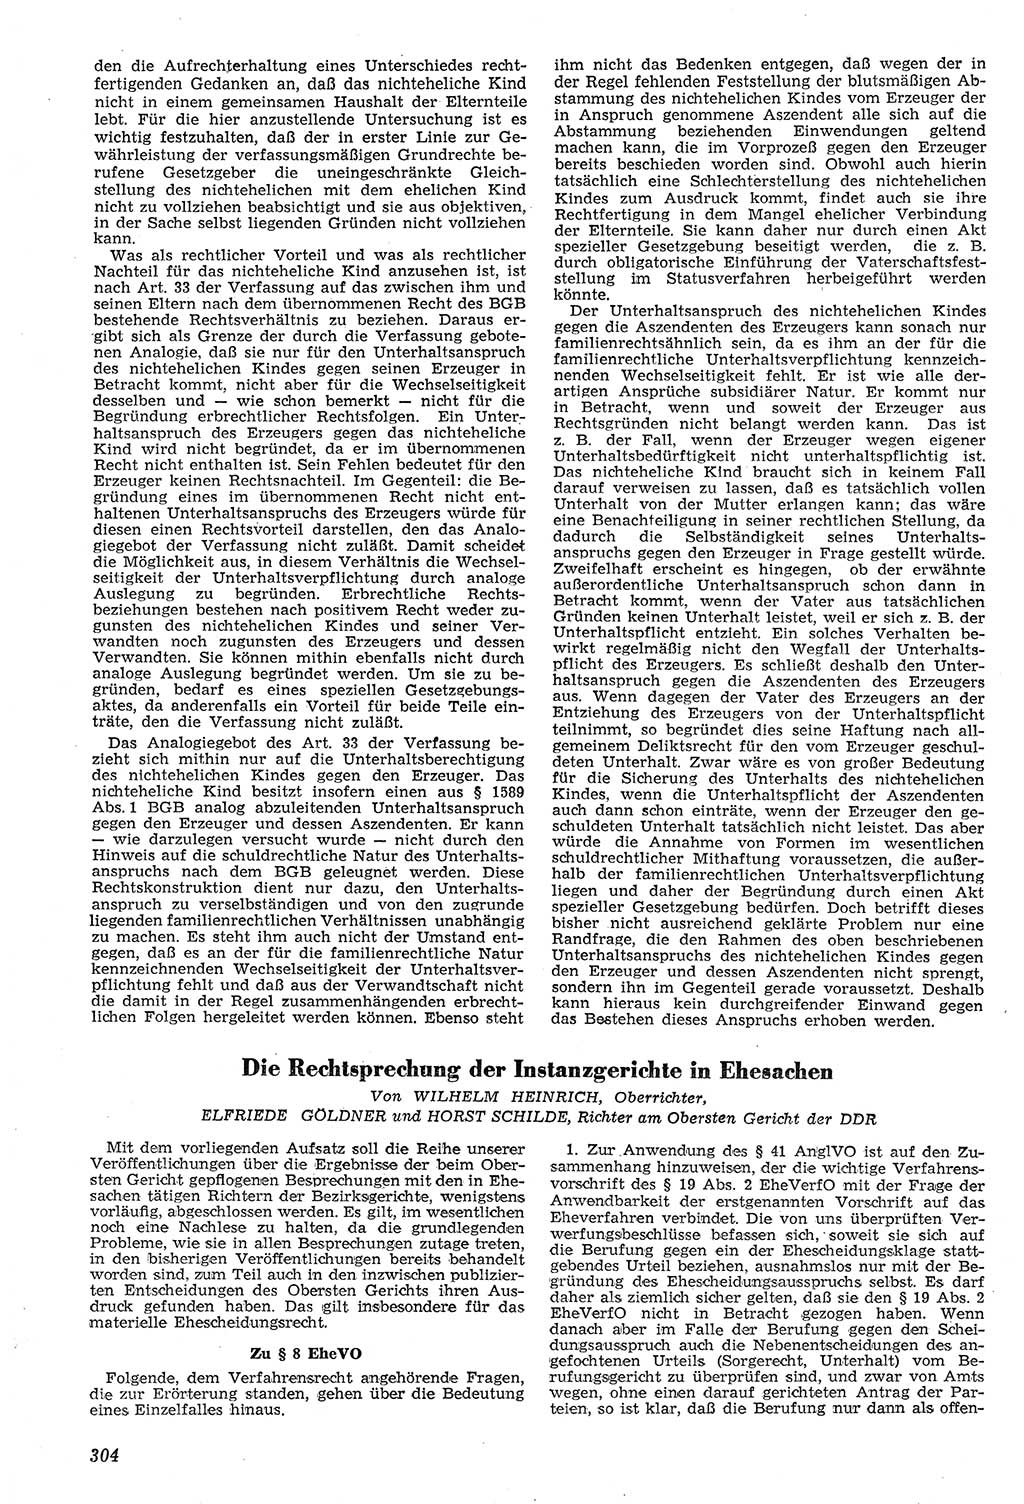 Neue Justiz (NJ), Zeitschrift für Recht und Rechtswissenschaft [Deutsche Demokratische Republik (DDR)], 11. Jahrgang 1957, Seite 304 (NJ DDR 1957, S. 304)